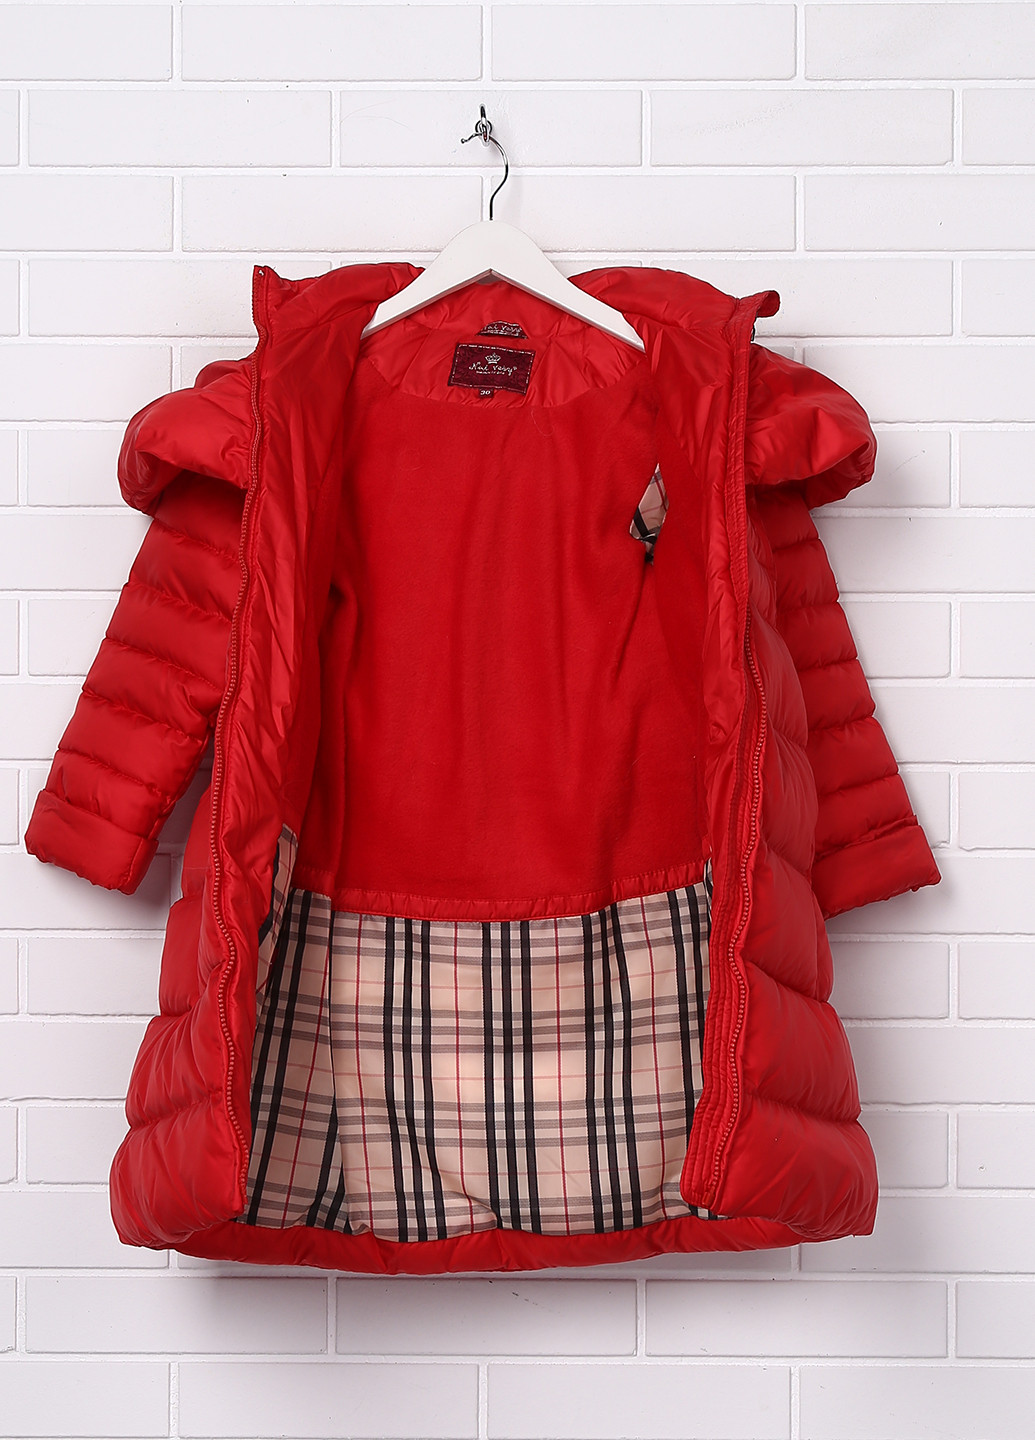 Красная зимняя куртка Nui Very